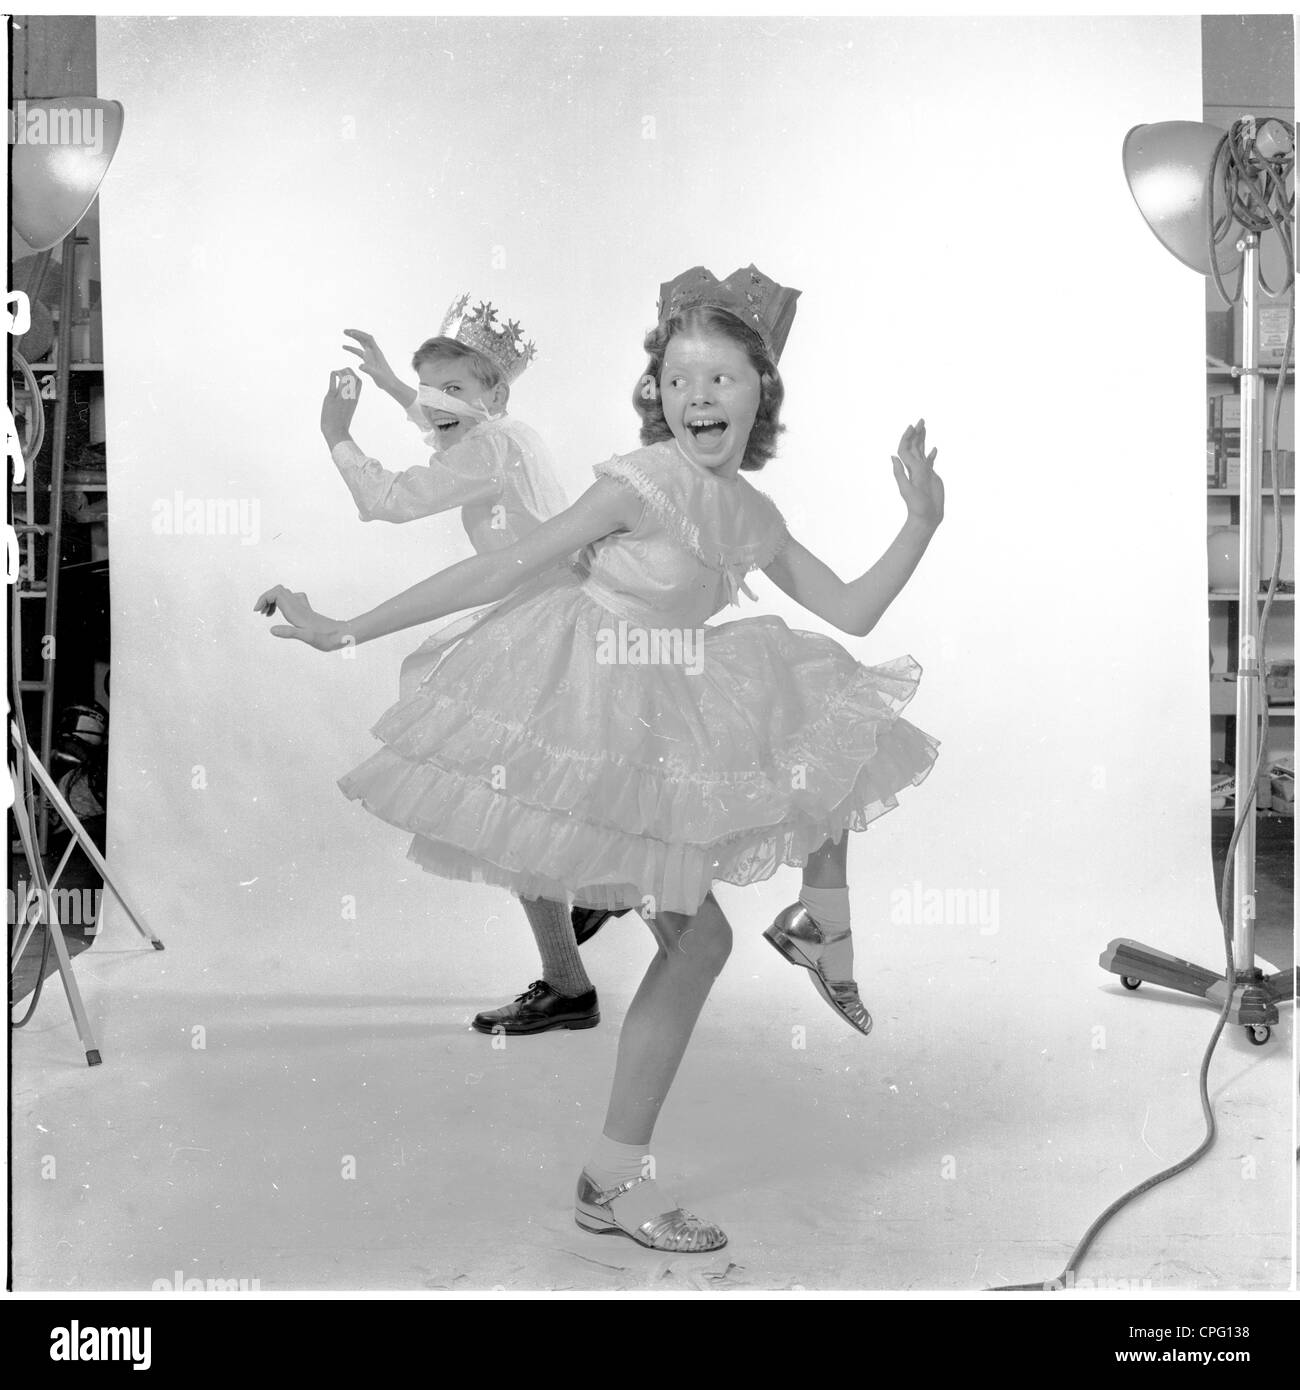 Se référant toujours à partir de 1960 montrant deux jeunes enfants habillés en costumes et chapeaux parti danser dans un studio photographique. Banque D'Images